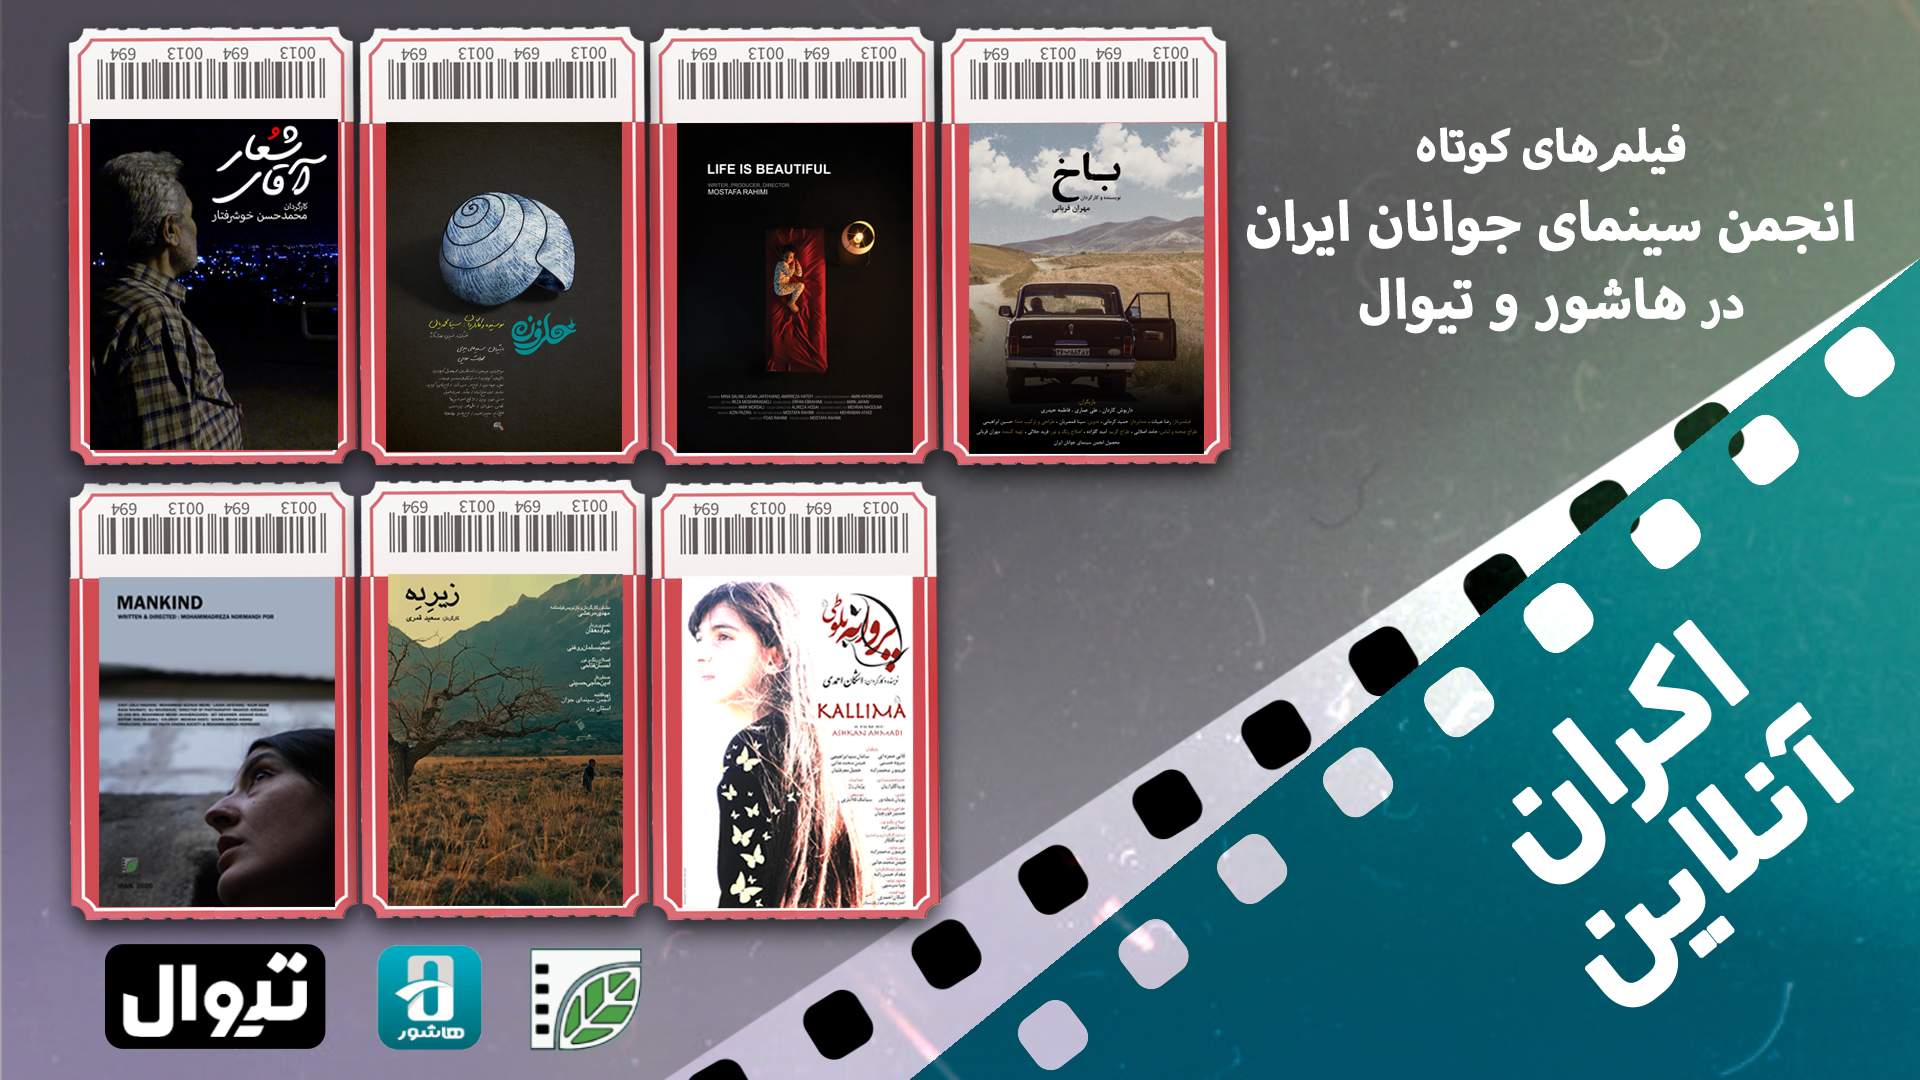 اکران آنلاین دو بسته جدید فیلم کوتاه در هاشور و تیوال